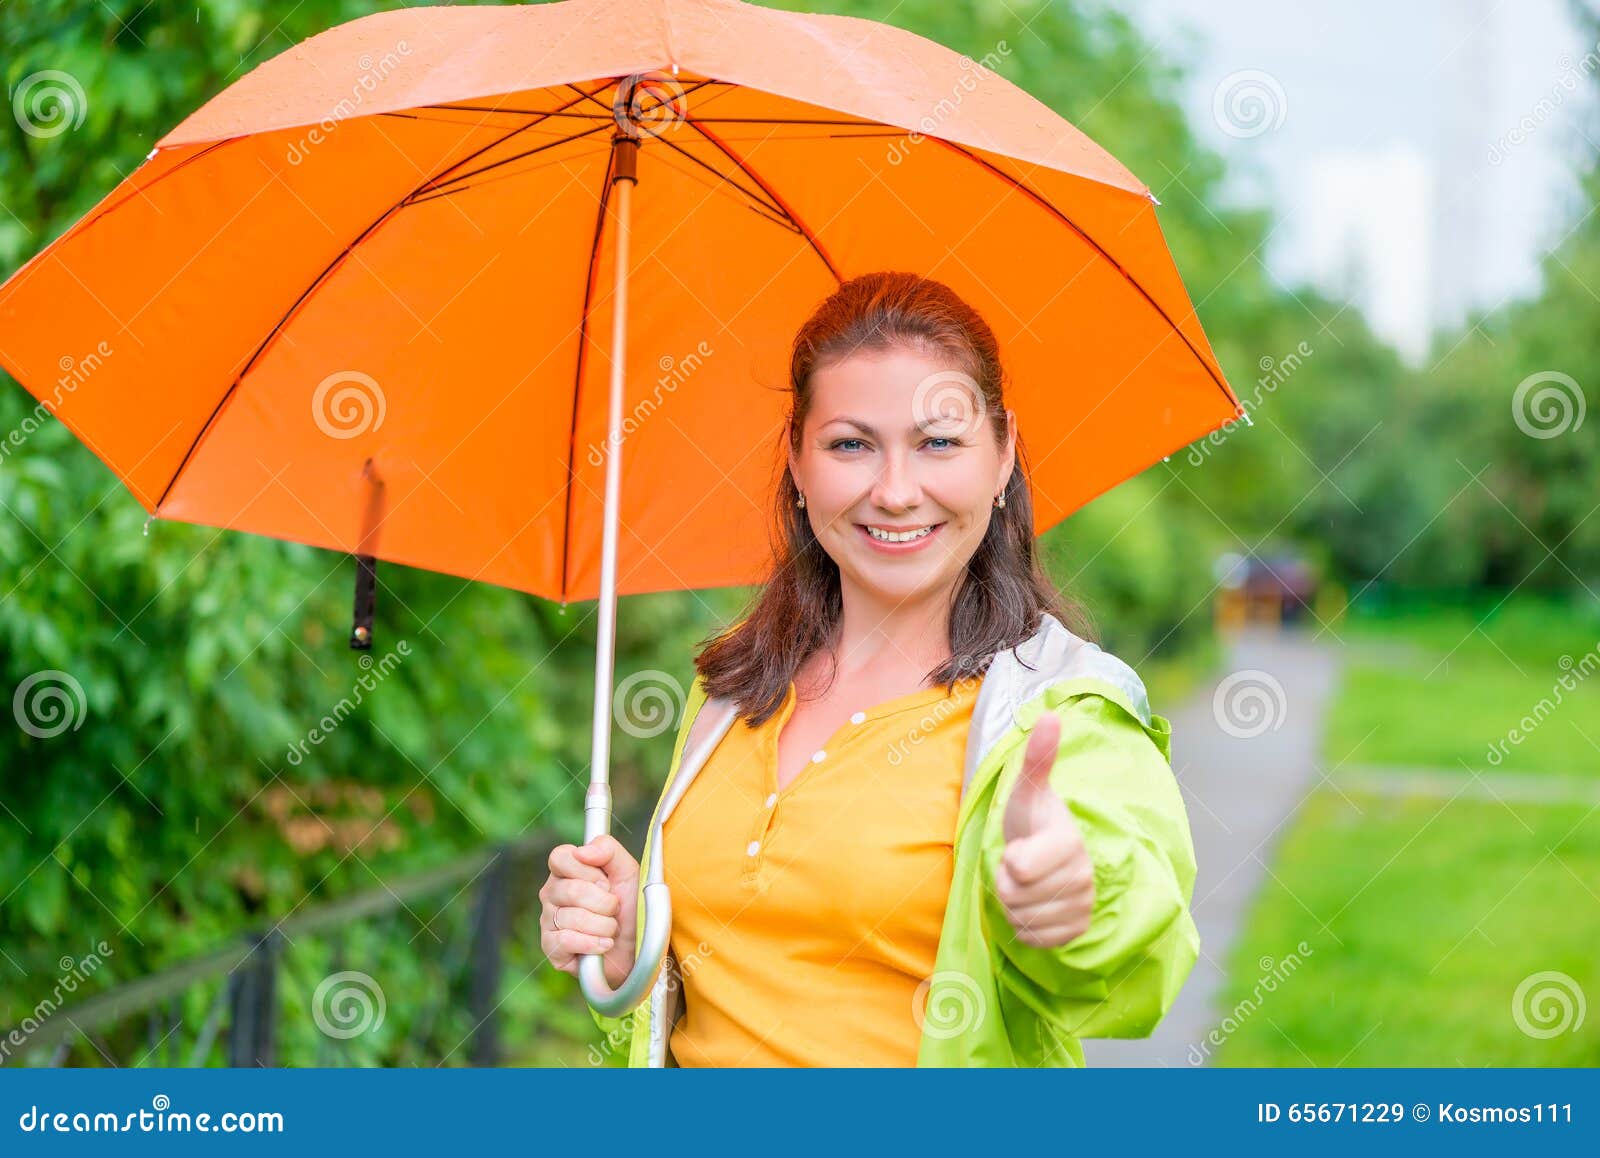 Гулять зонтиком. Девушка с оранжевым зонтом. Прогулка дама с зонтиком. Прогулка женщина с зонтиком. Гулять с зонтиком.